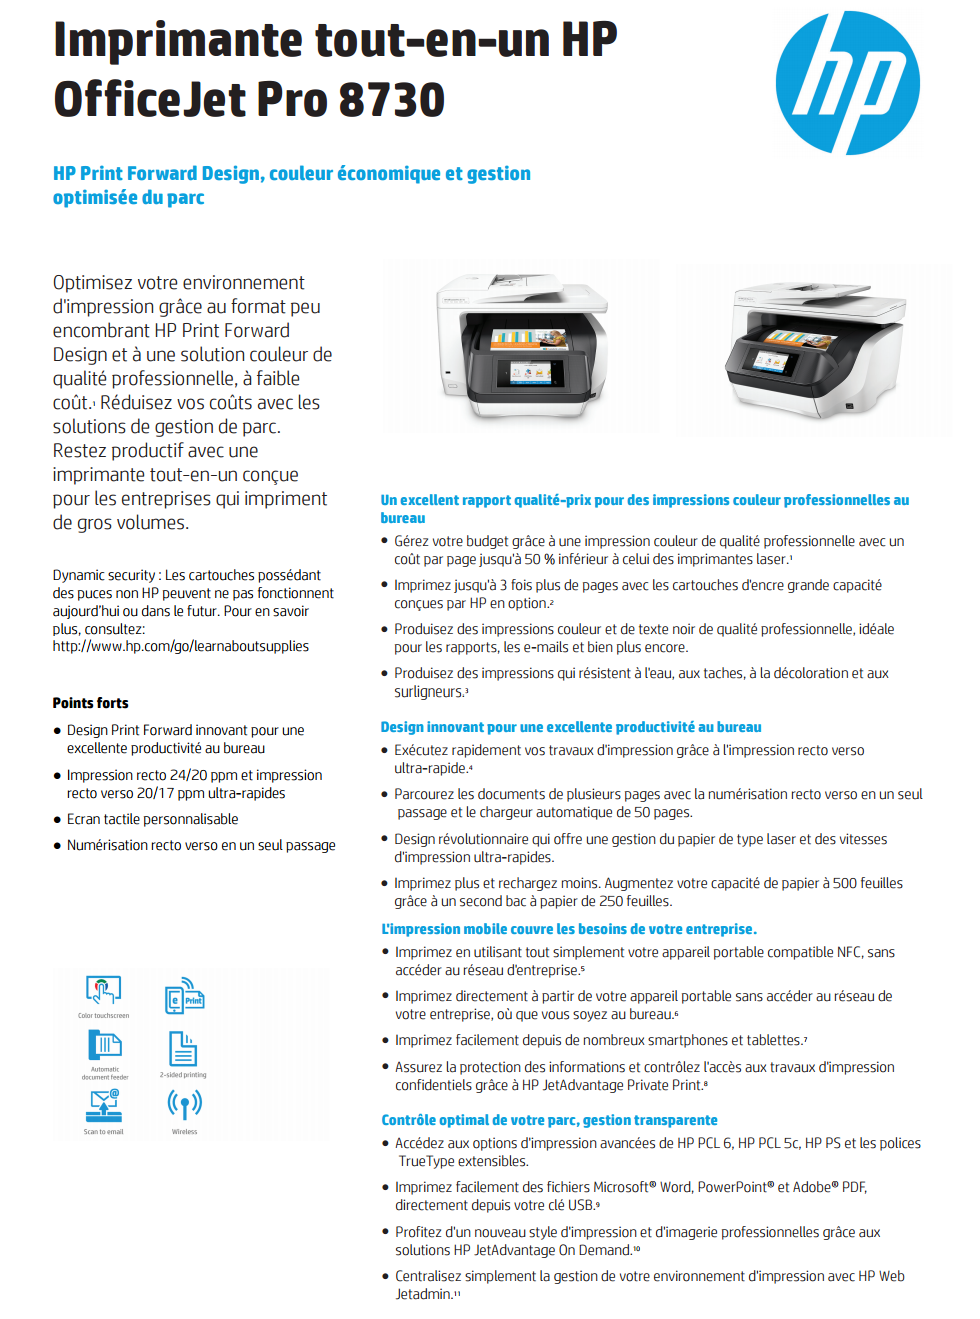 Imprimante multifonction Jet d'encre HP OfficeJet Pro 8730 (D9L20A